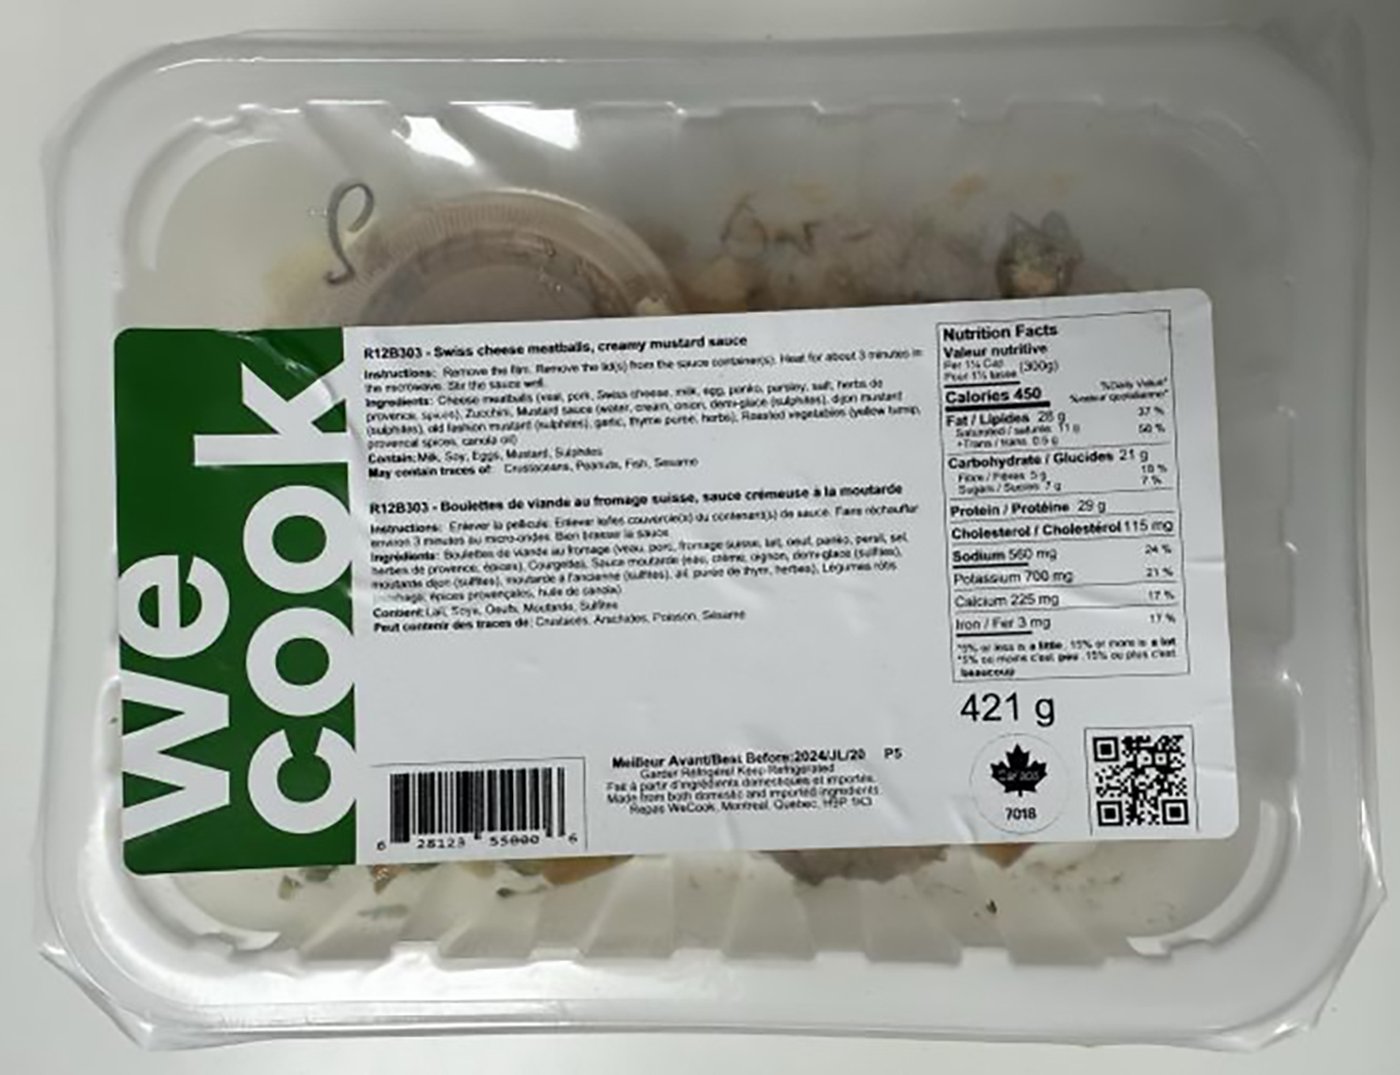 L’ACIA rappelle des boulettes WeCook potentiellement contaminées par la Listeria